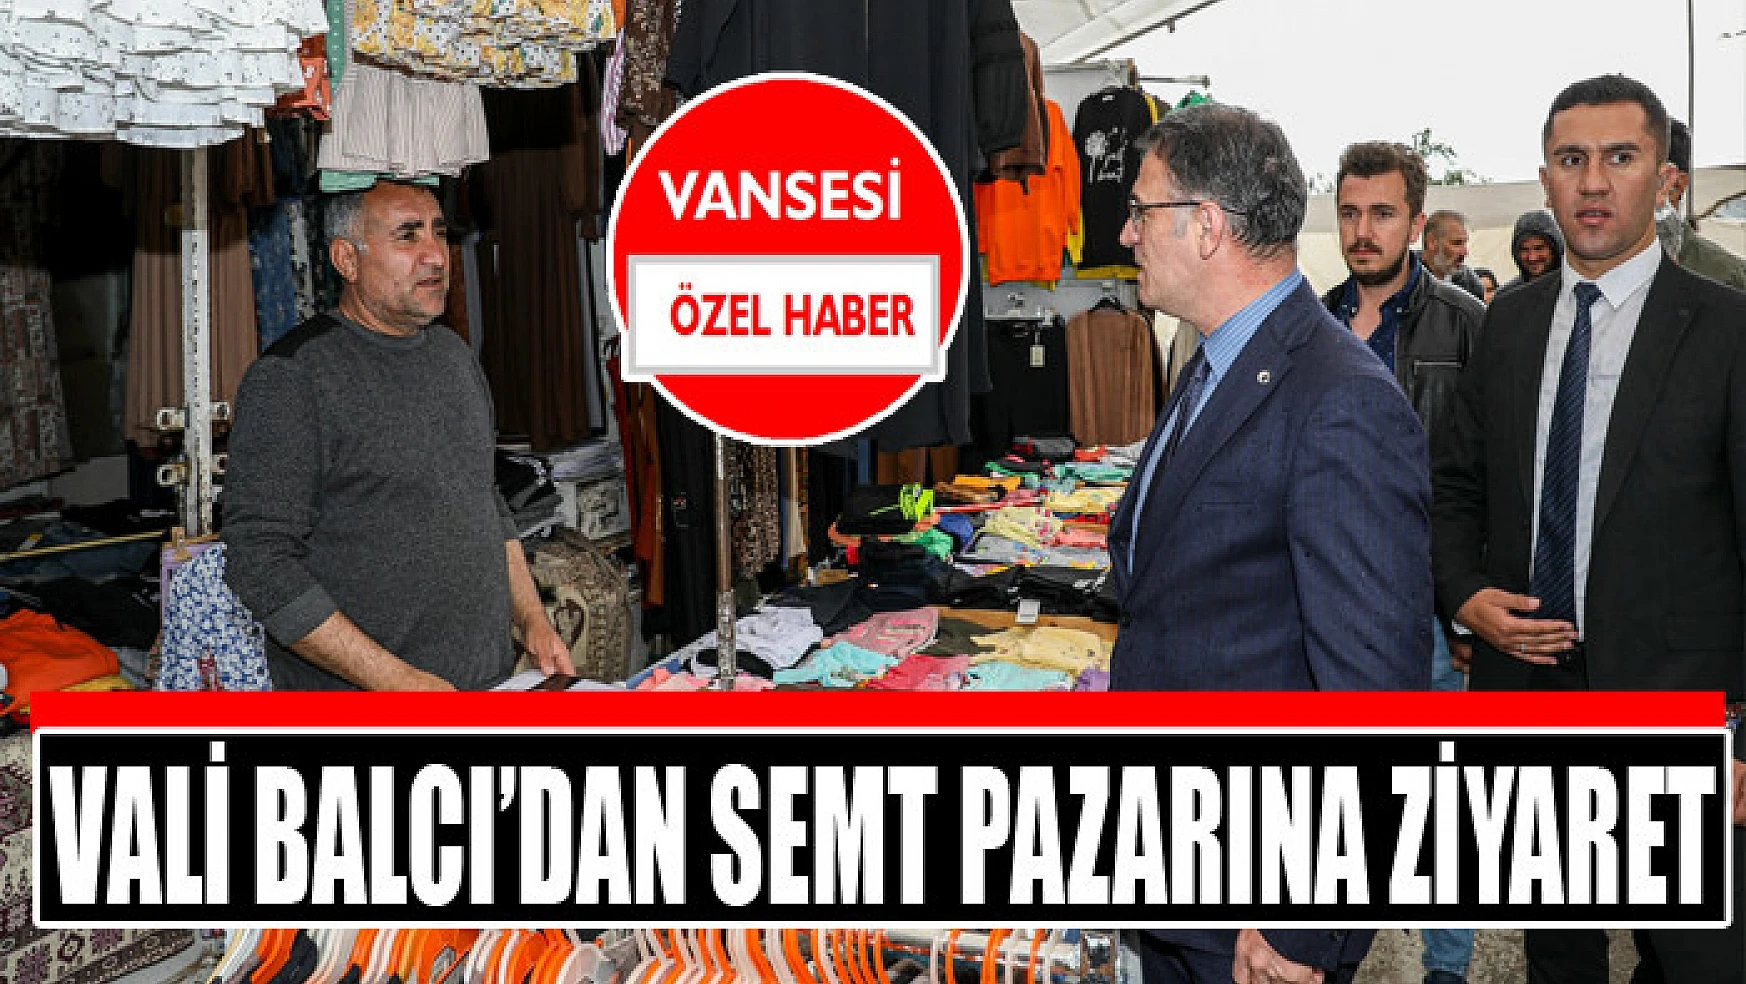 Vali Balcı'dan semt pazarına ziyaret